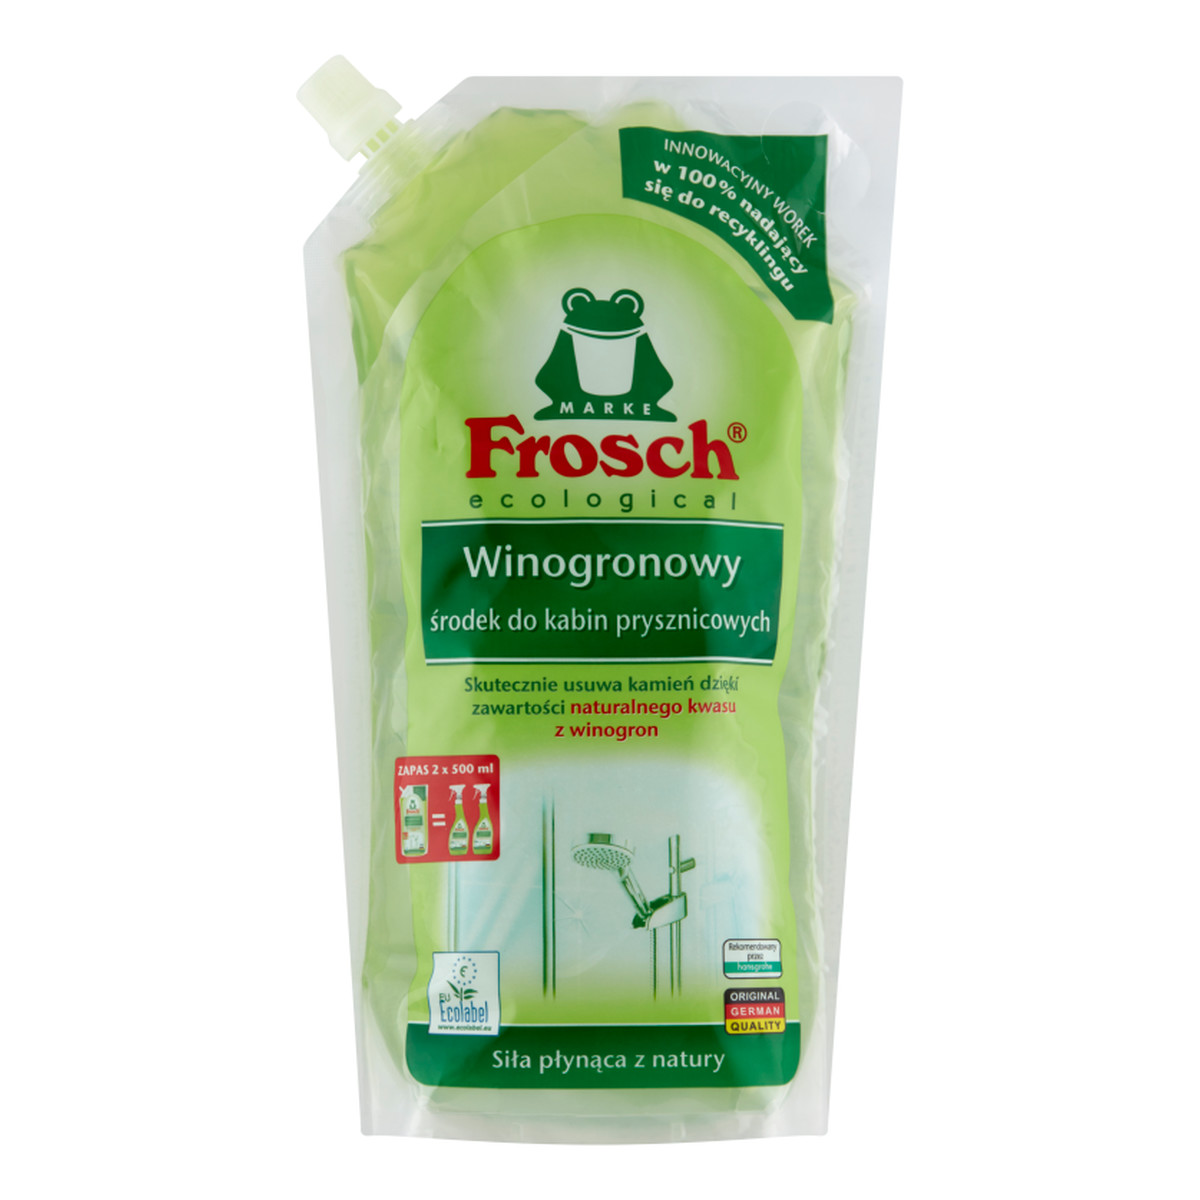 Frosch Ecological Winogronowy środek do kabin prysznicowych zapas 1000ml